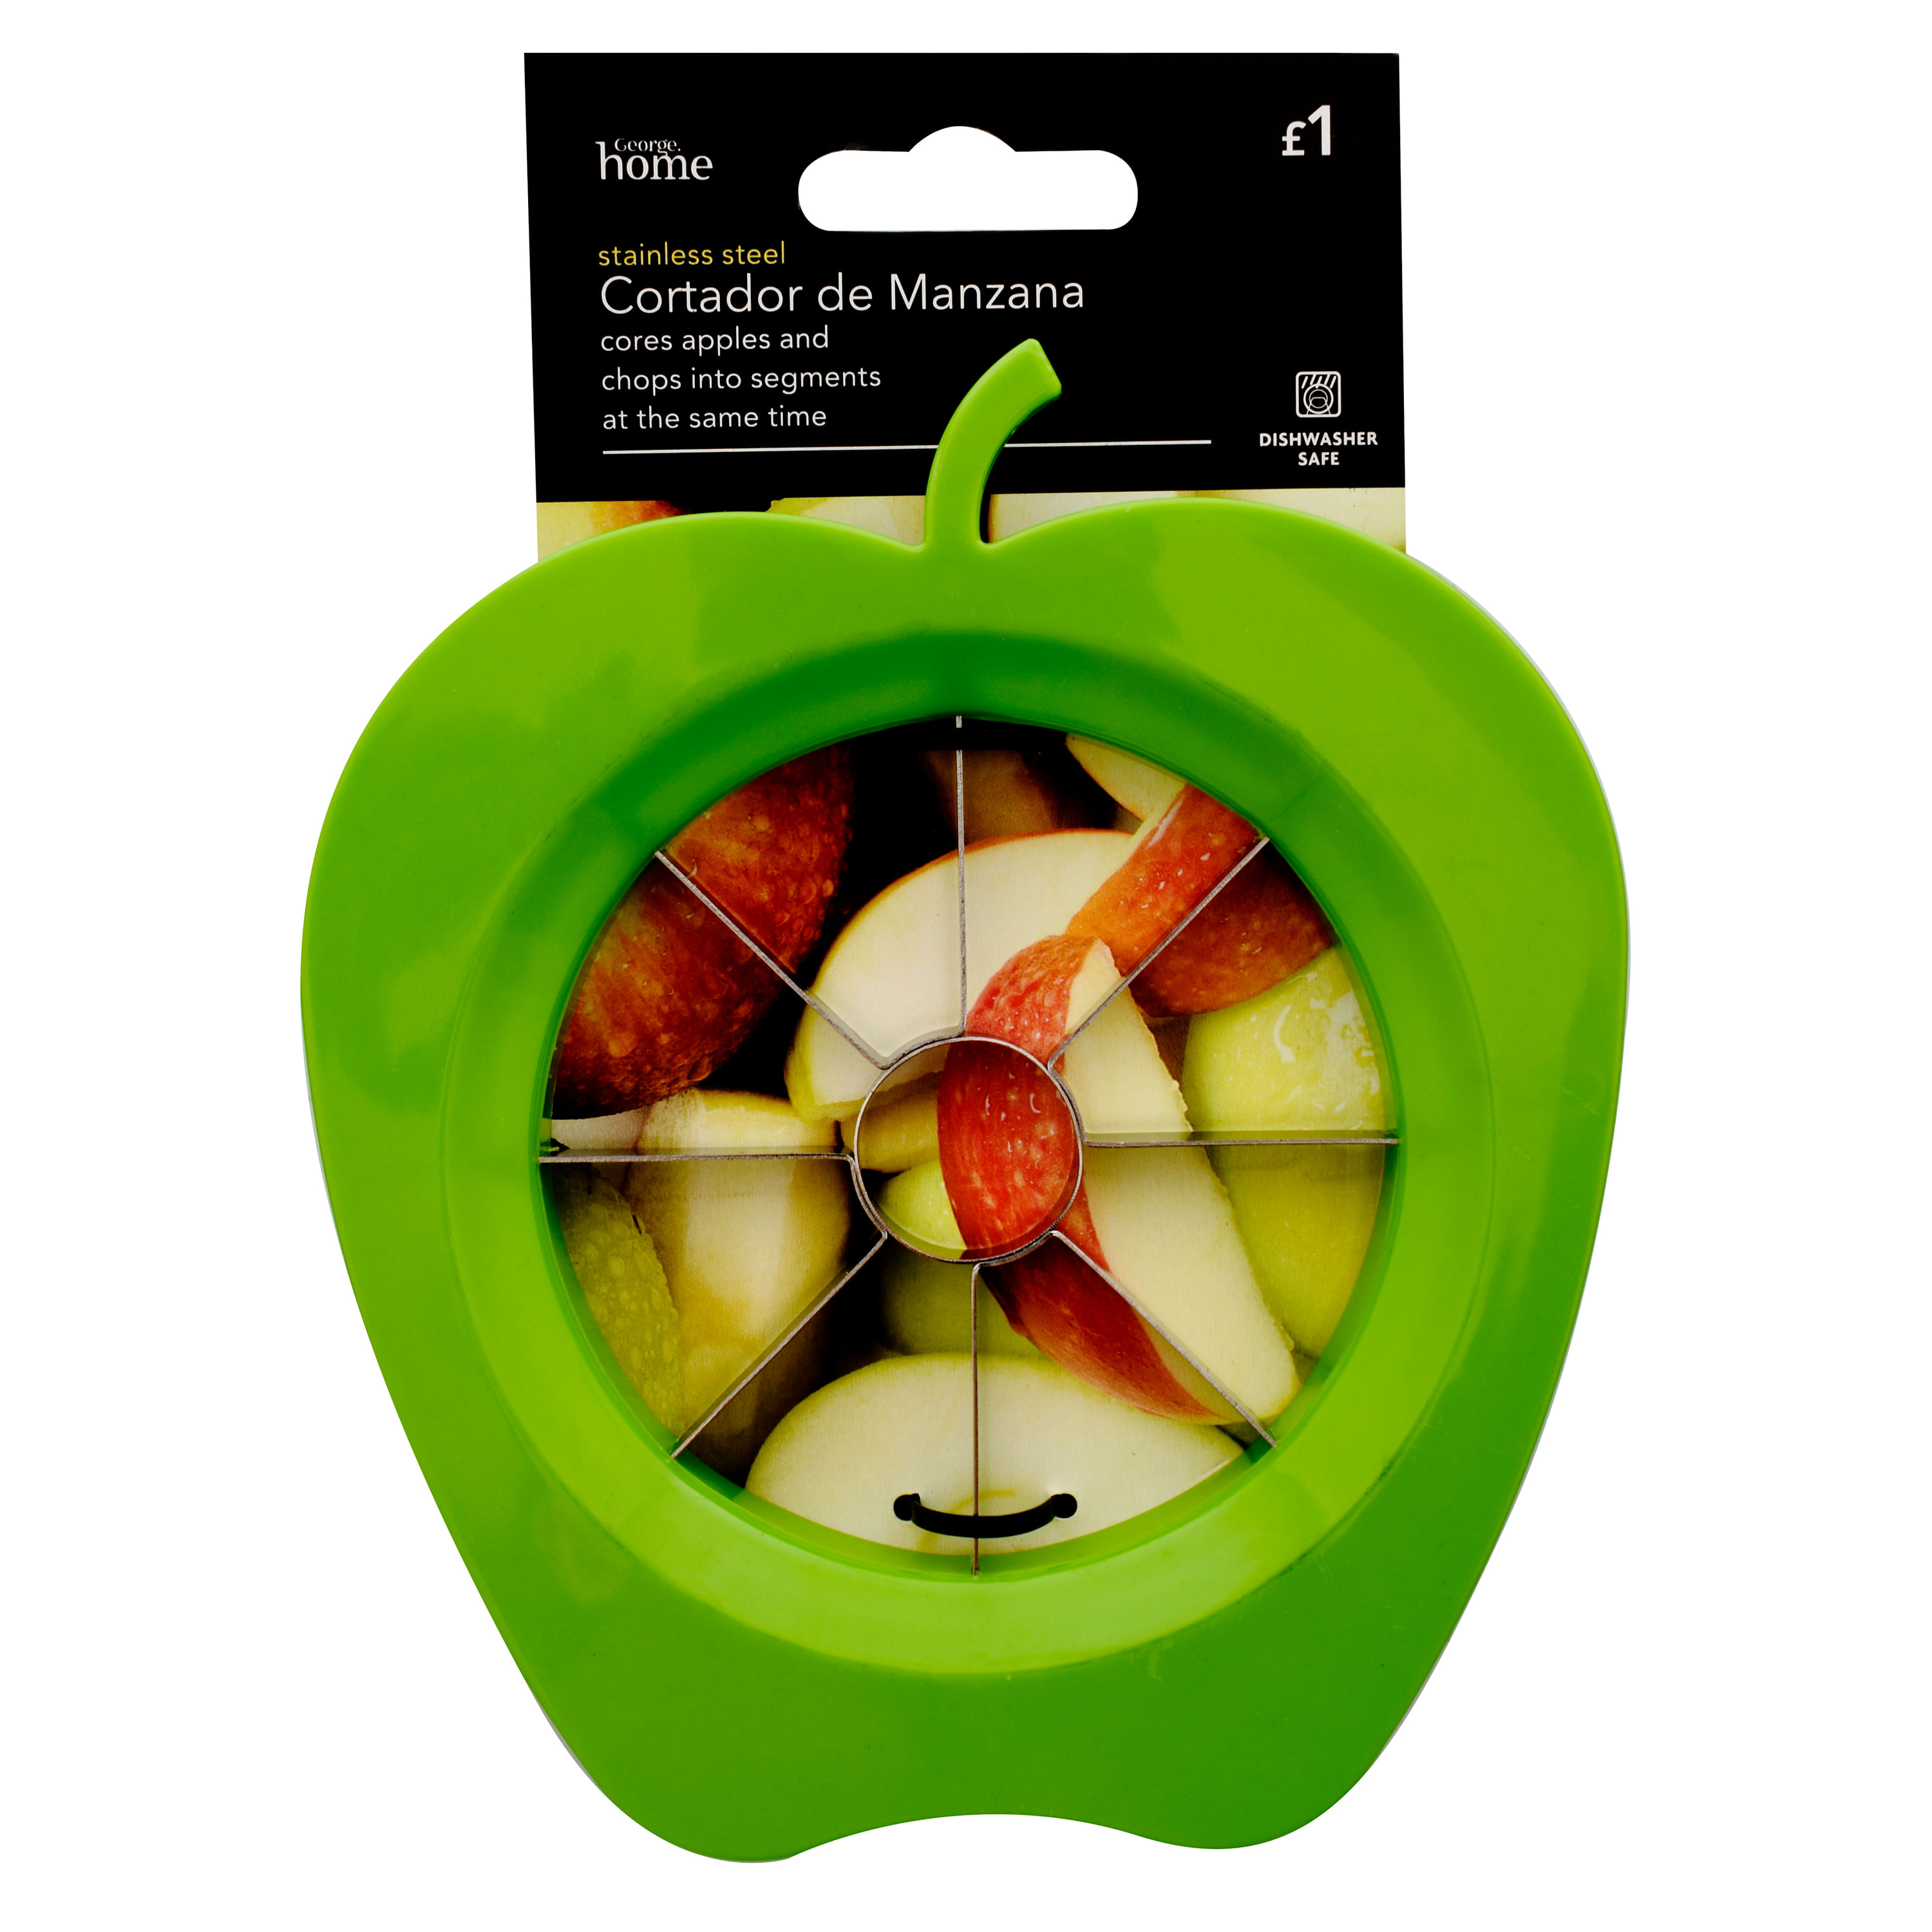 Cortador de manzana — Amo cocinar